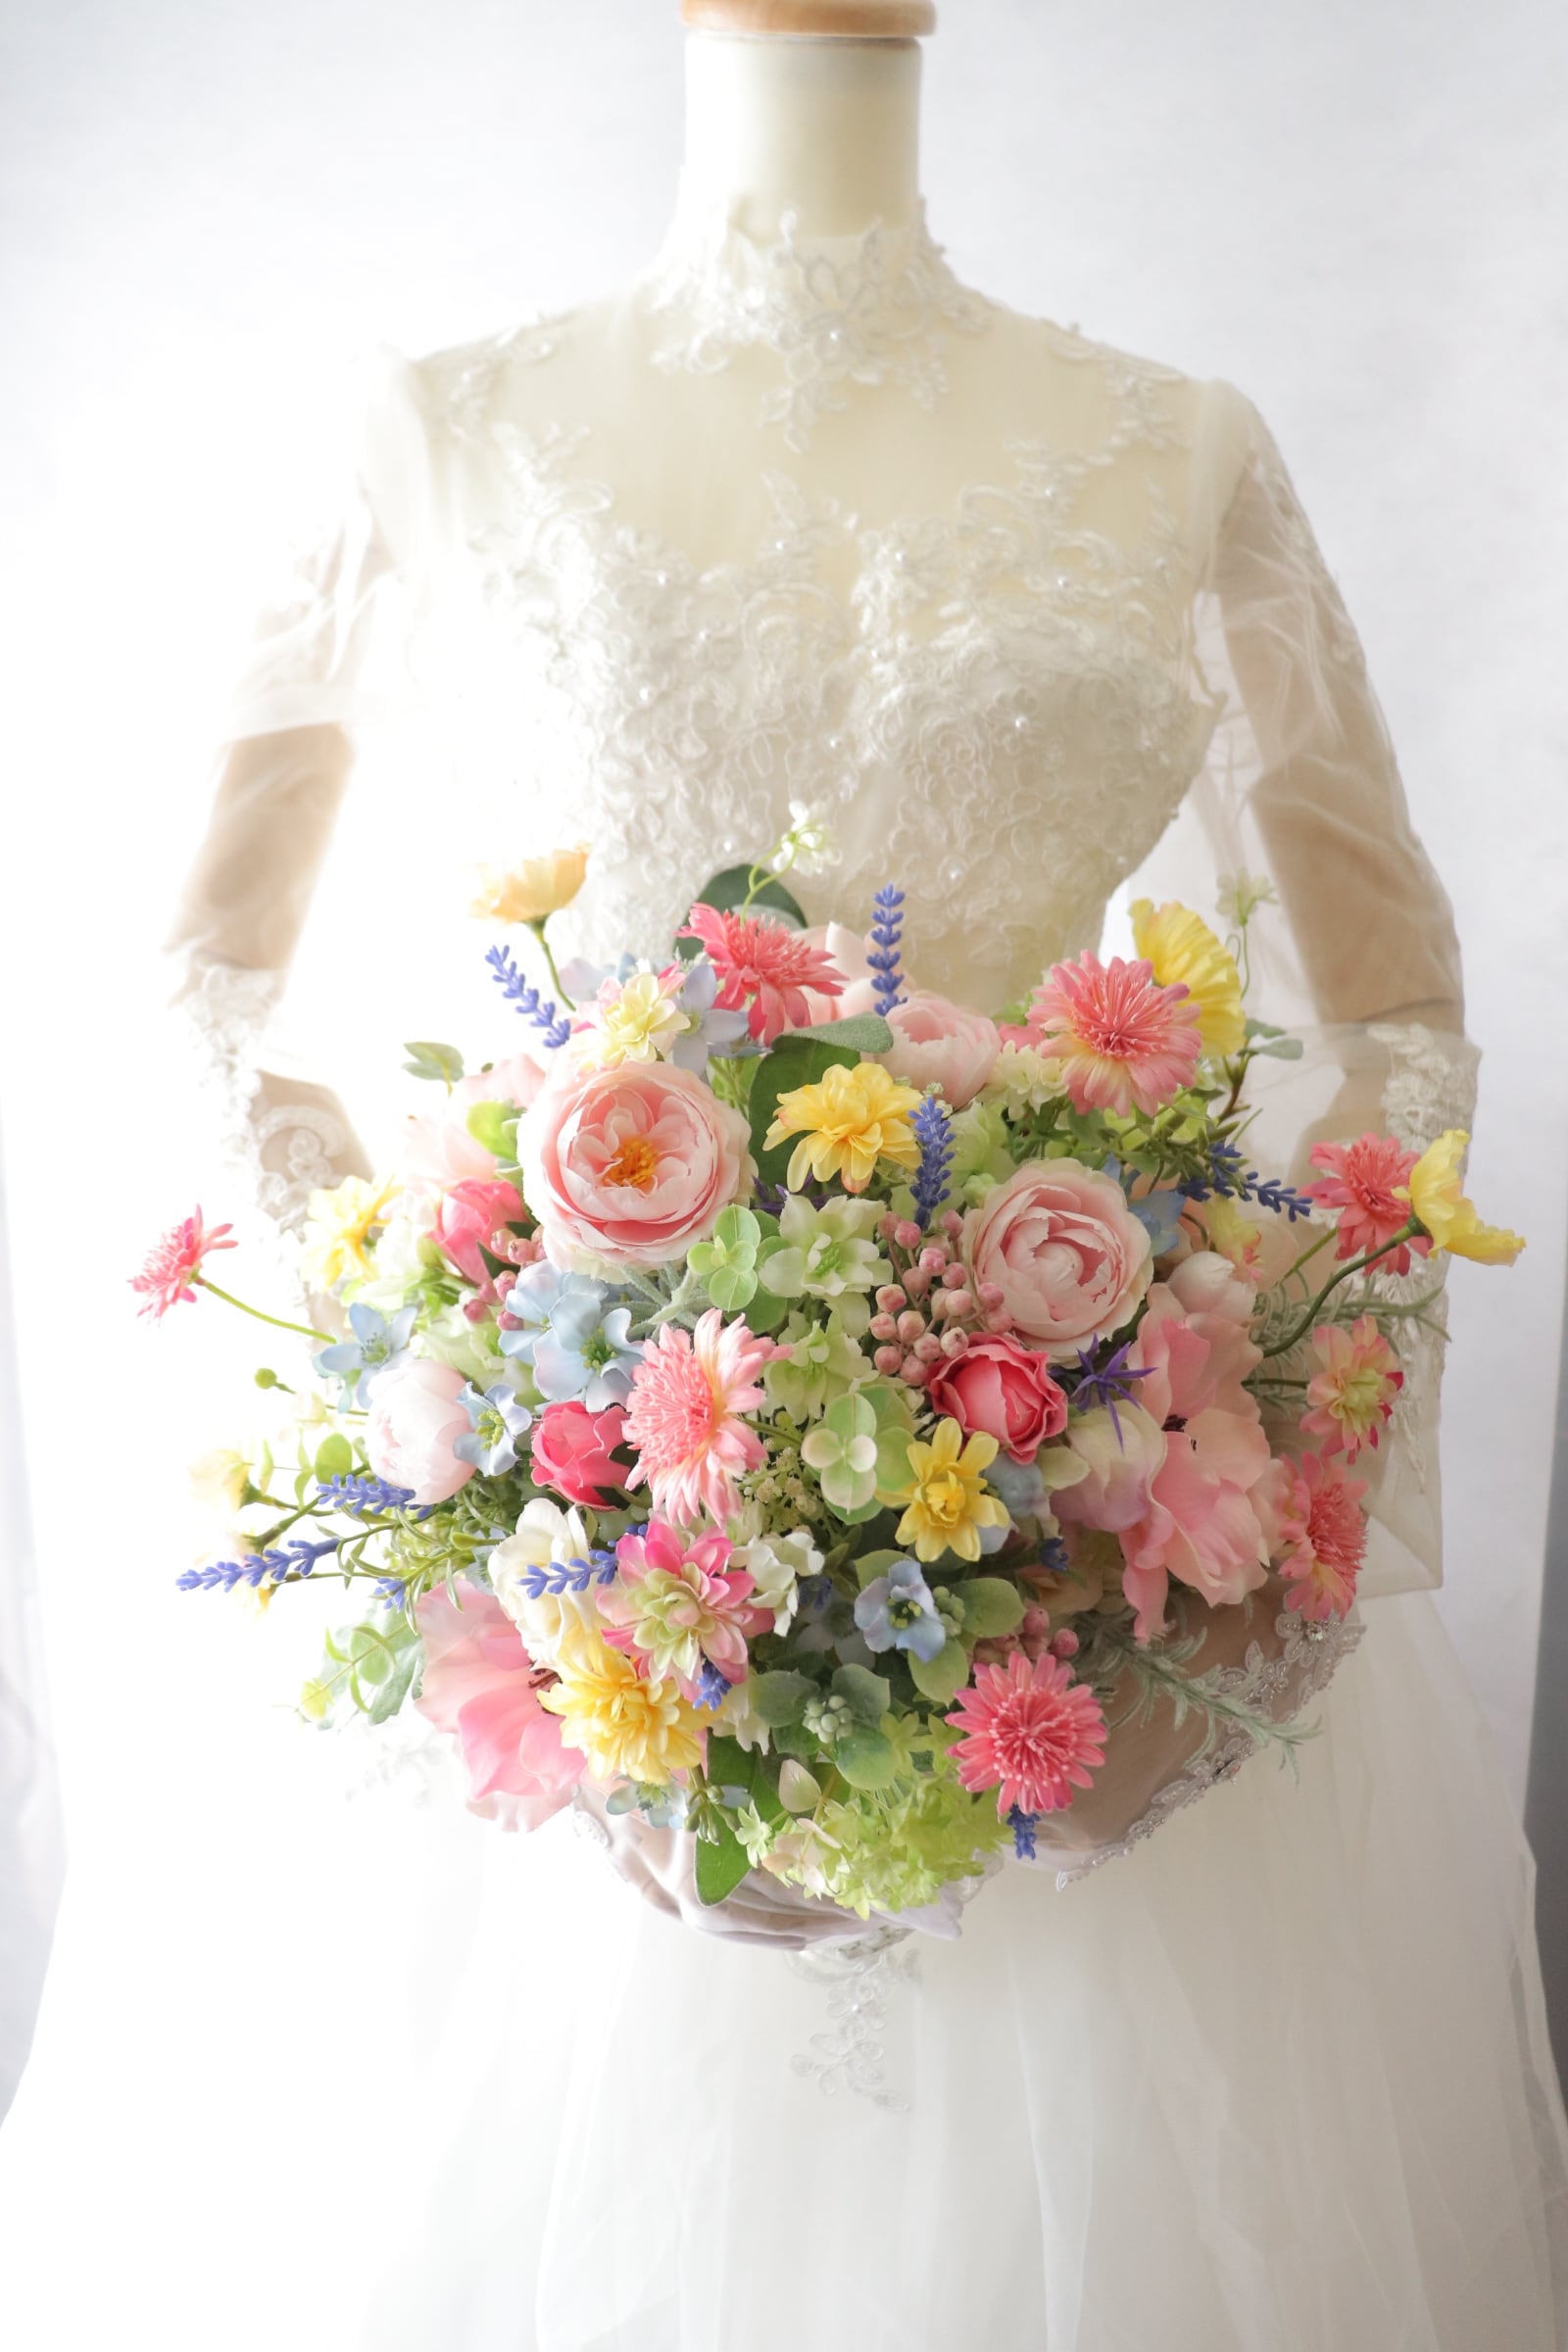 展示品 アネモネブーケ ナチュラル ウェディンブーケ 造花 結婚式 造花ブーケラスティックウェディング